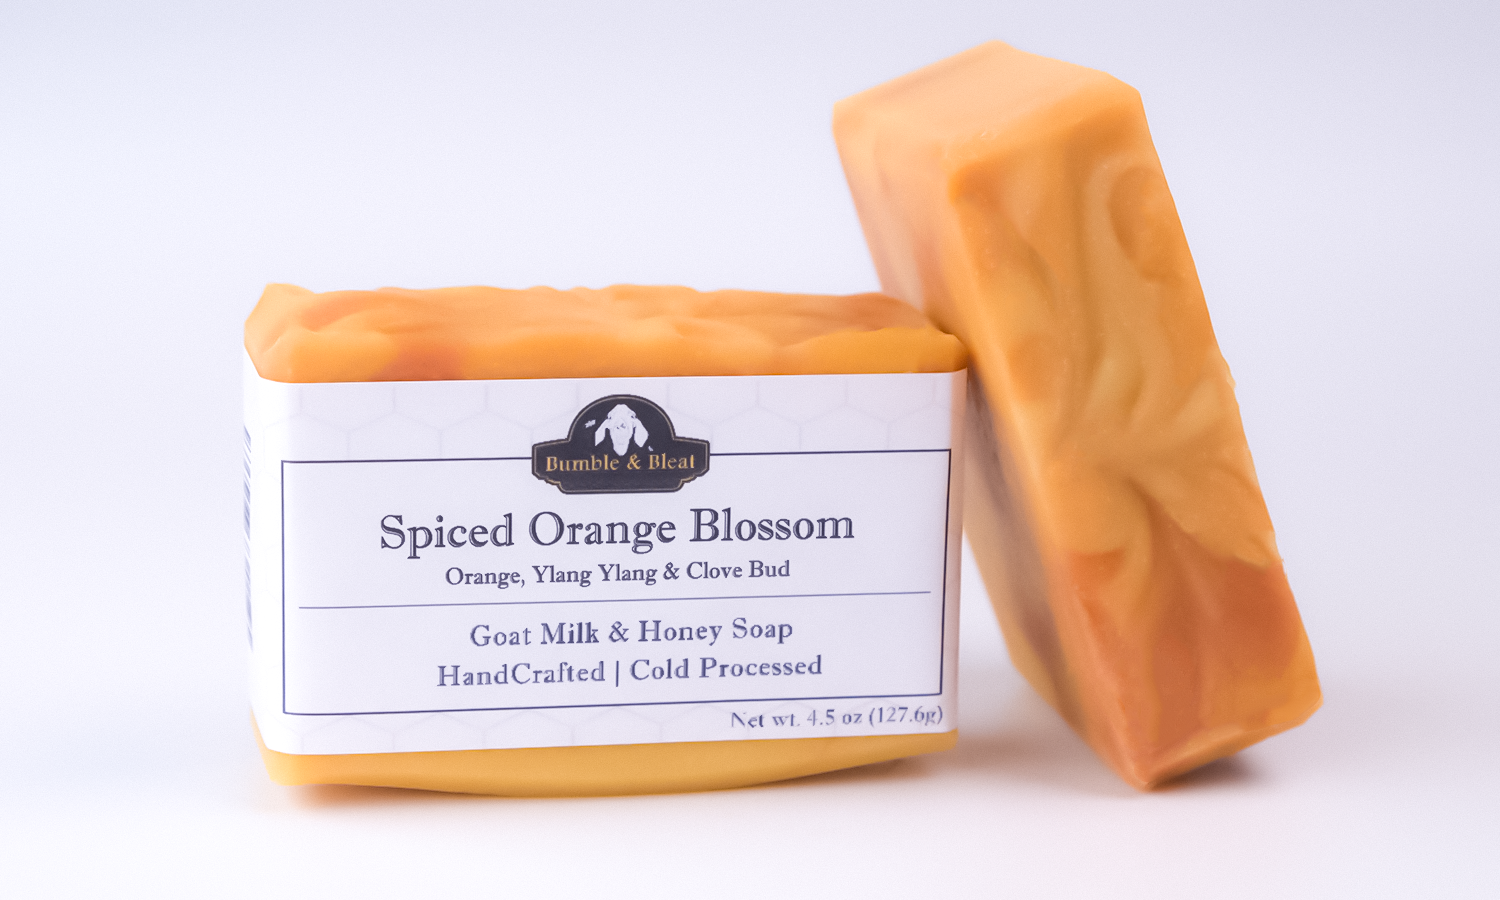 Spiced orange blossom bar soap